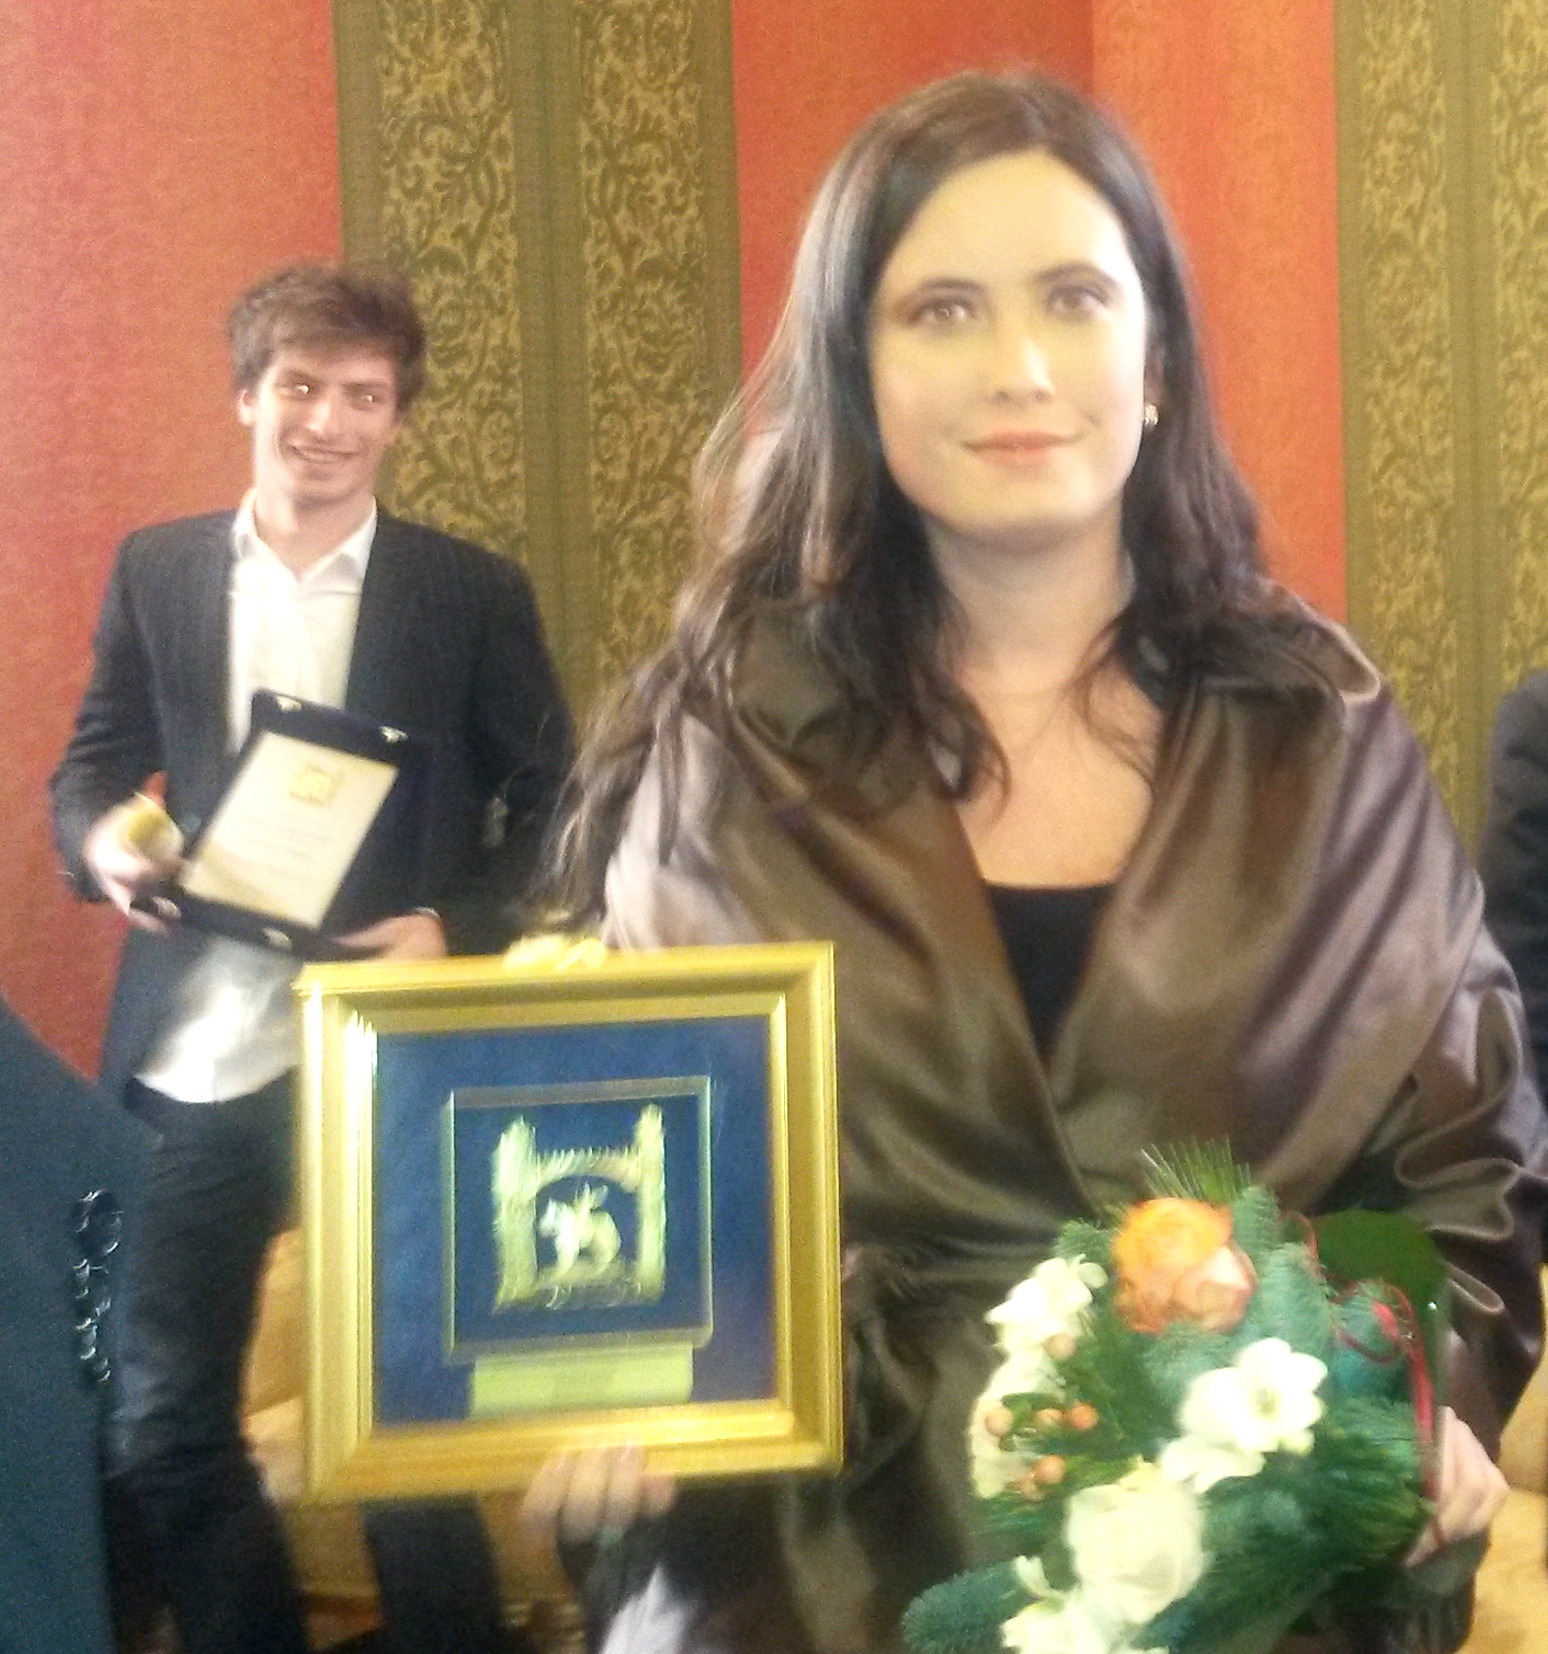 Premio Ucsi 2013 a Daiana Paoli, collaboratrice di Articolo21